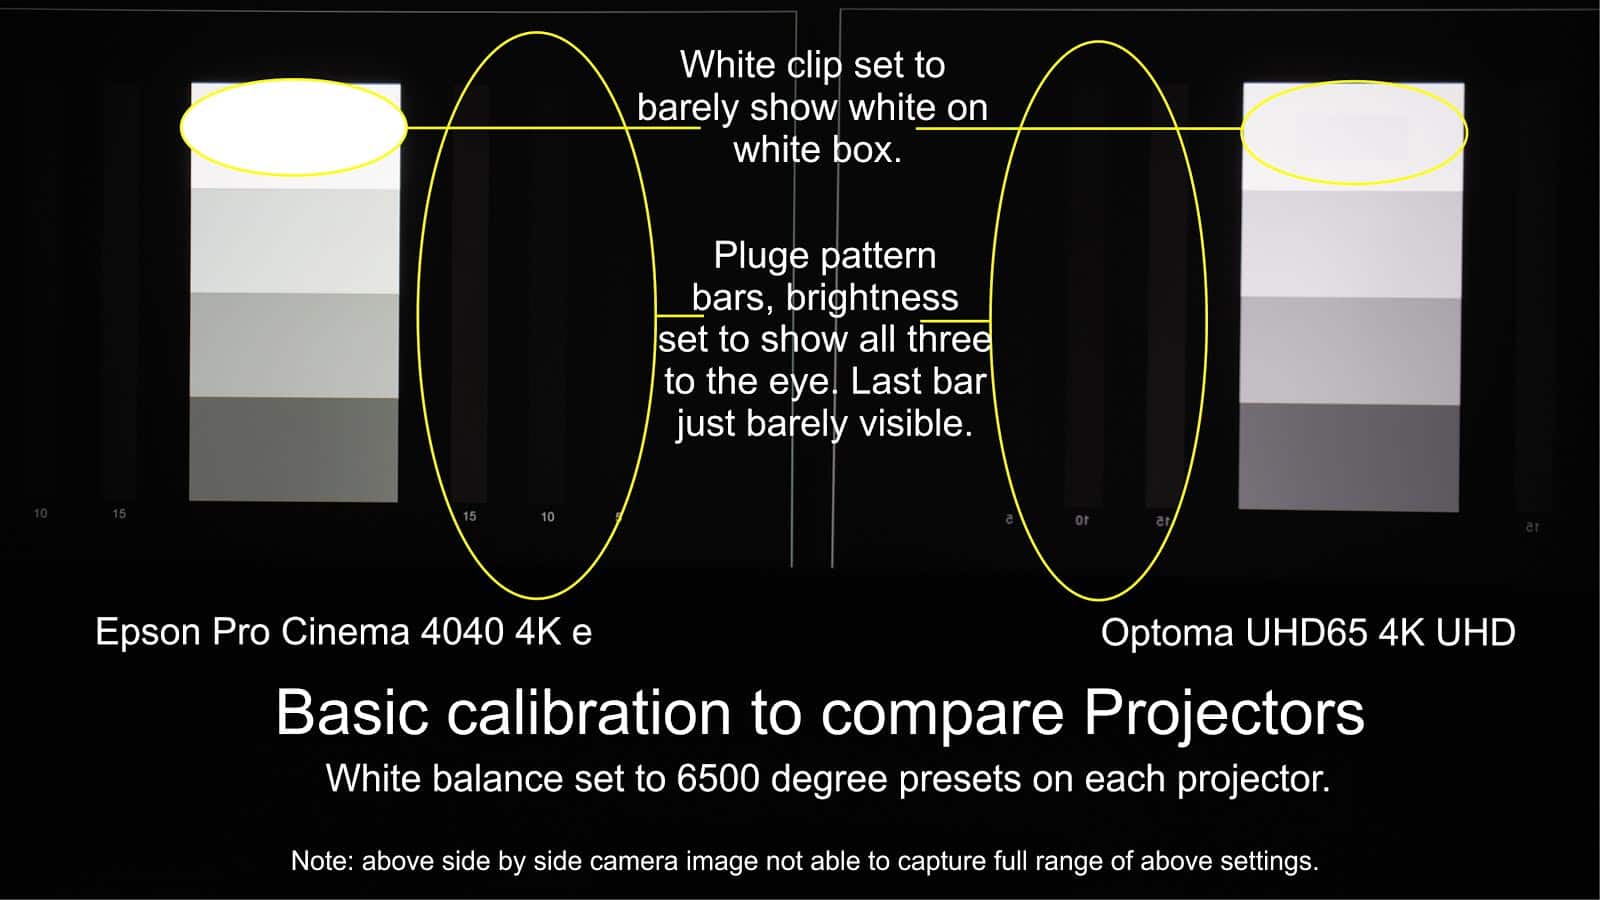 Sony VPL-VW365ES vs Epson Pro Cinema 4040: White balance